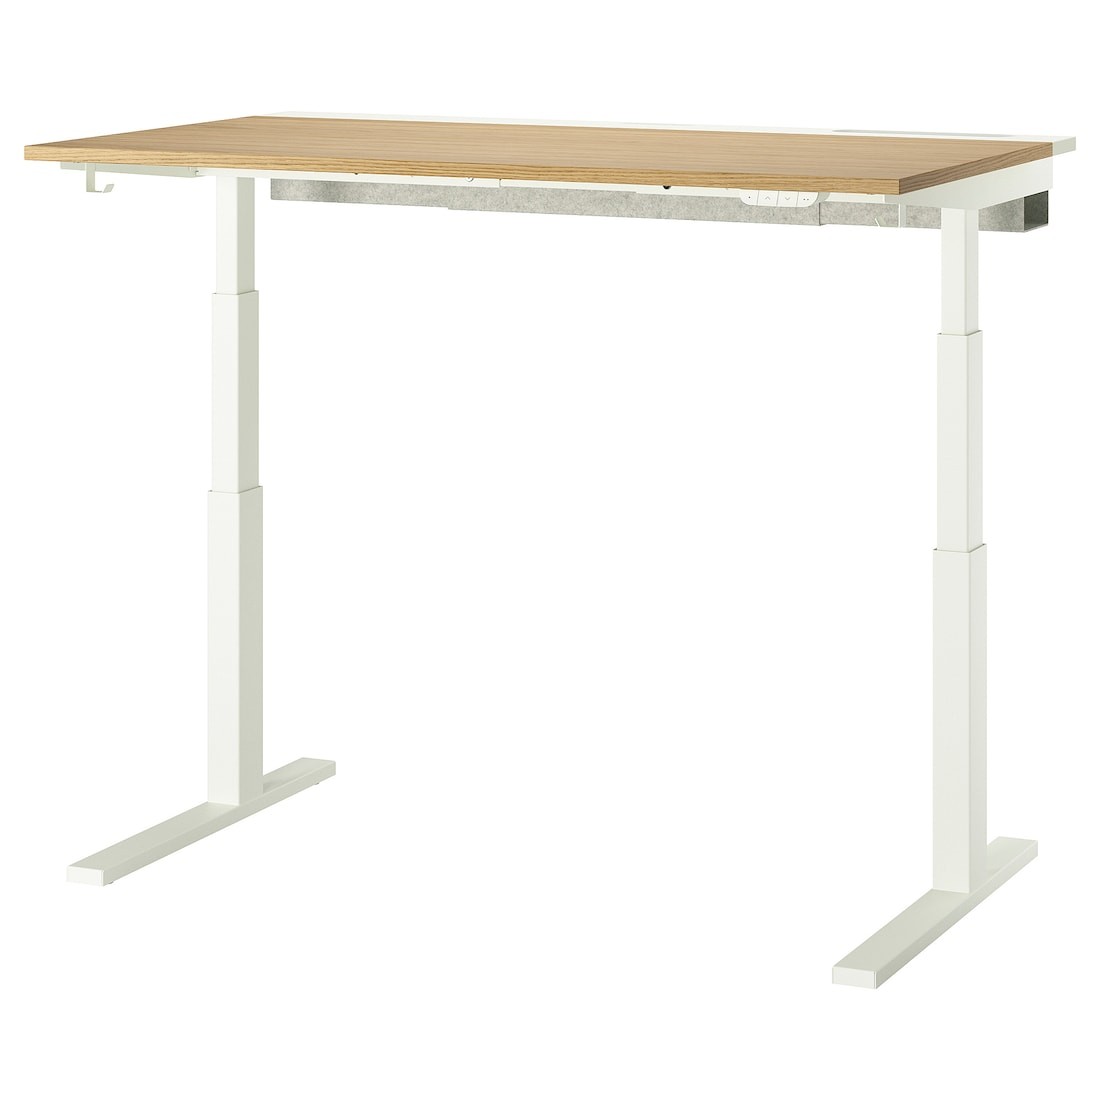 MITTZON стіл регульований, дуб електричний / білий шпон, 140x80 см